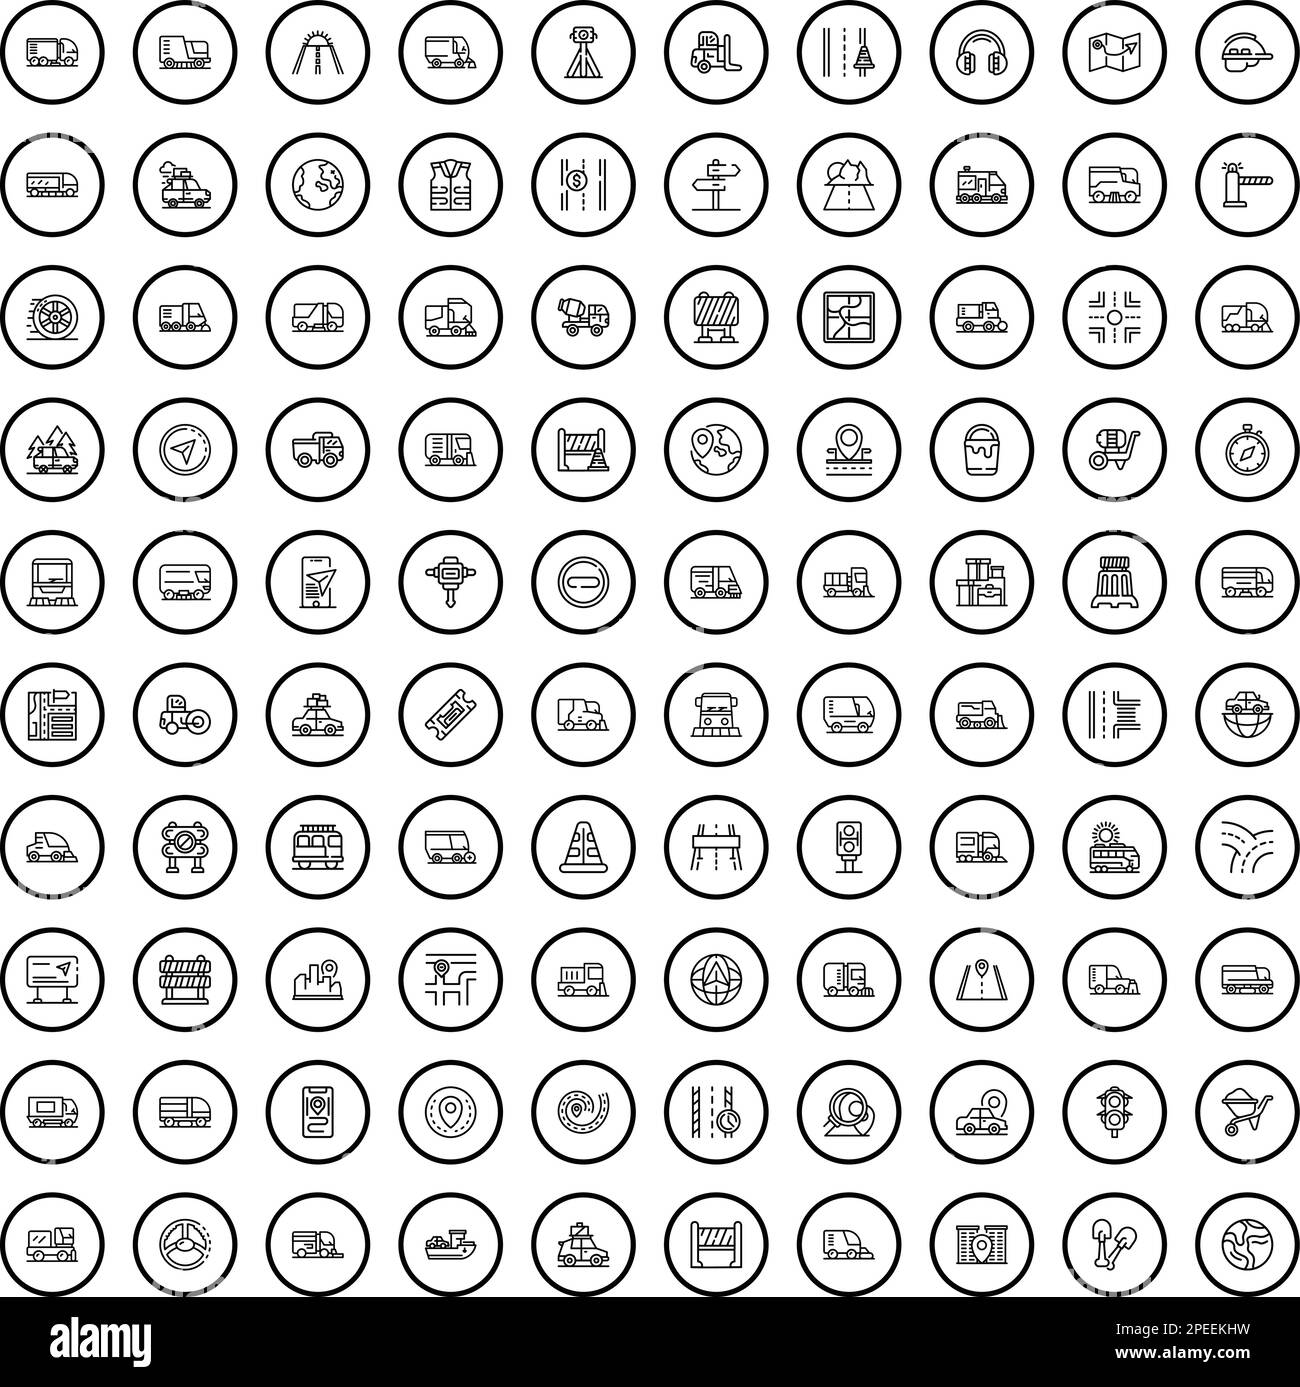 100 Straßensymbole eingestellt. Skizzieren Sie die Darstellung von 100 Straßensymbolen, die auf weißem Hintergrund isoliert dargestellt werden Stock Vektor